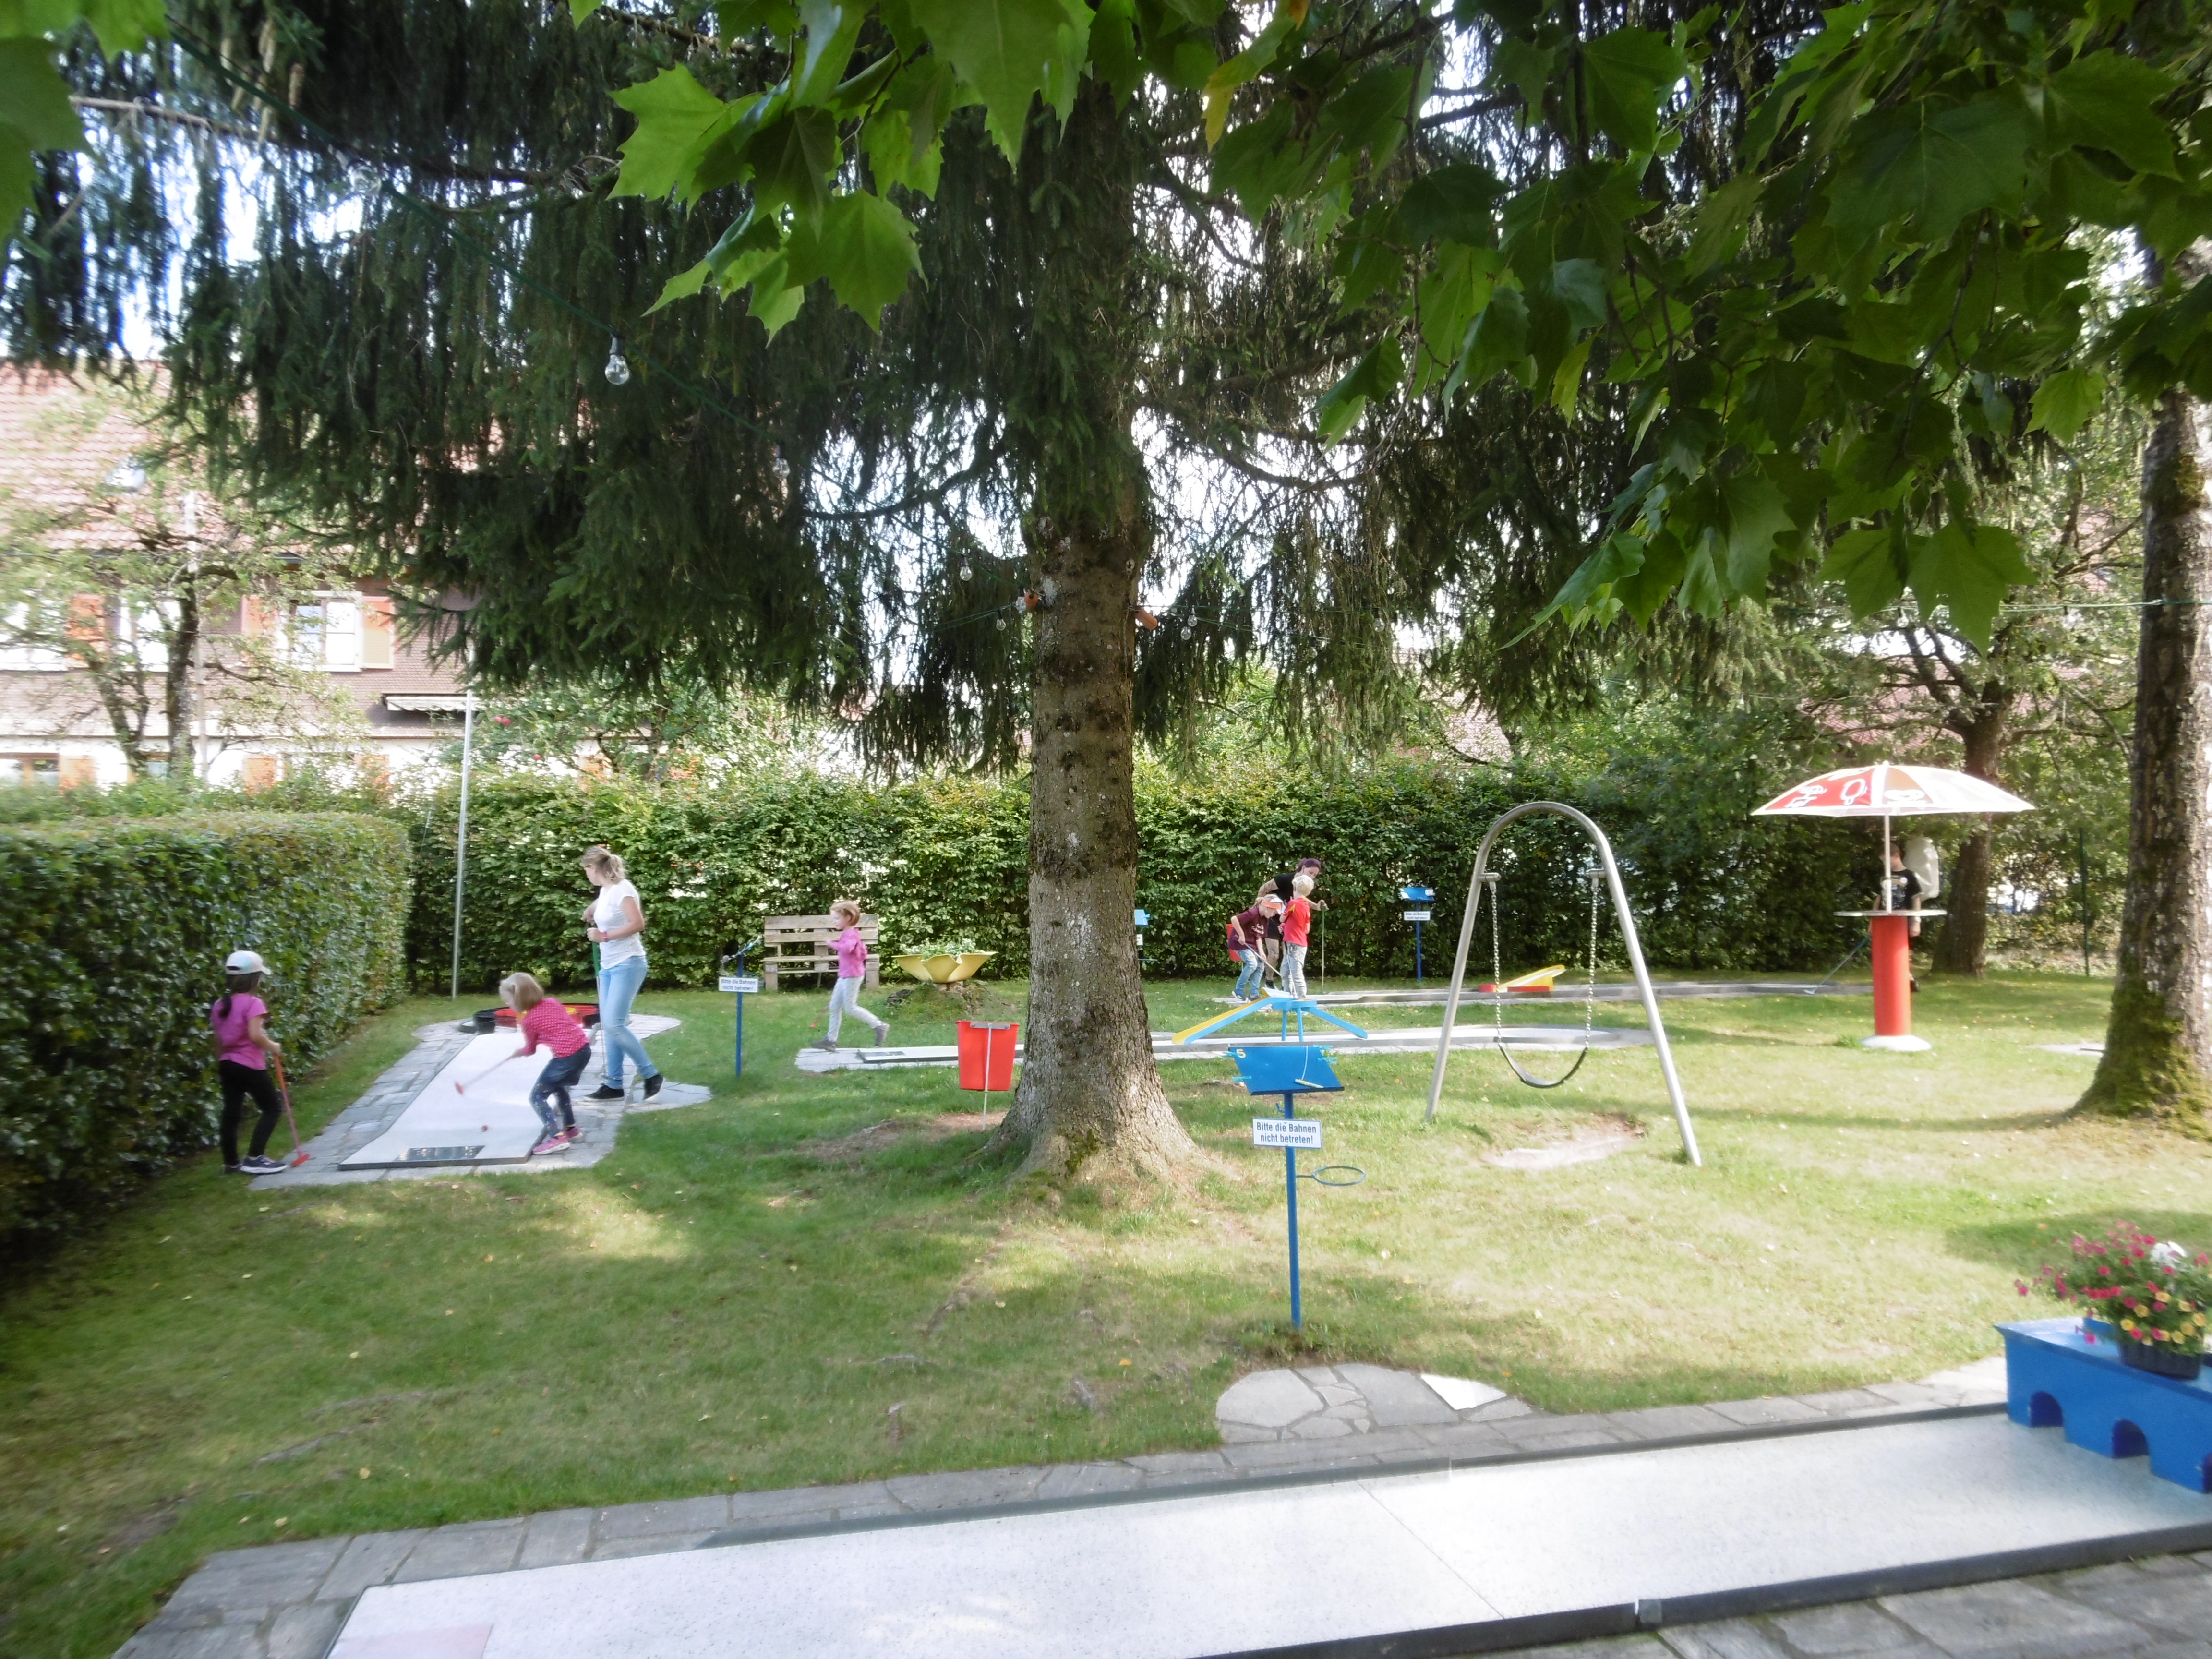  Kinder spielen an unterschiedlichen Stationen auf einer Wiese - das Bild wird mit Klick vergrößert 